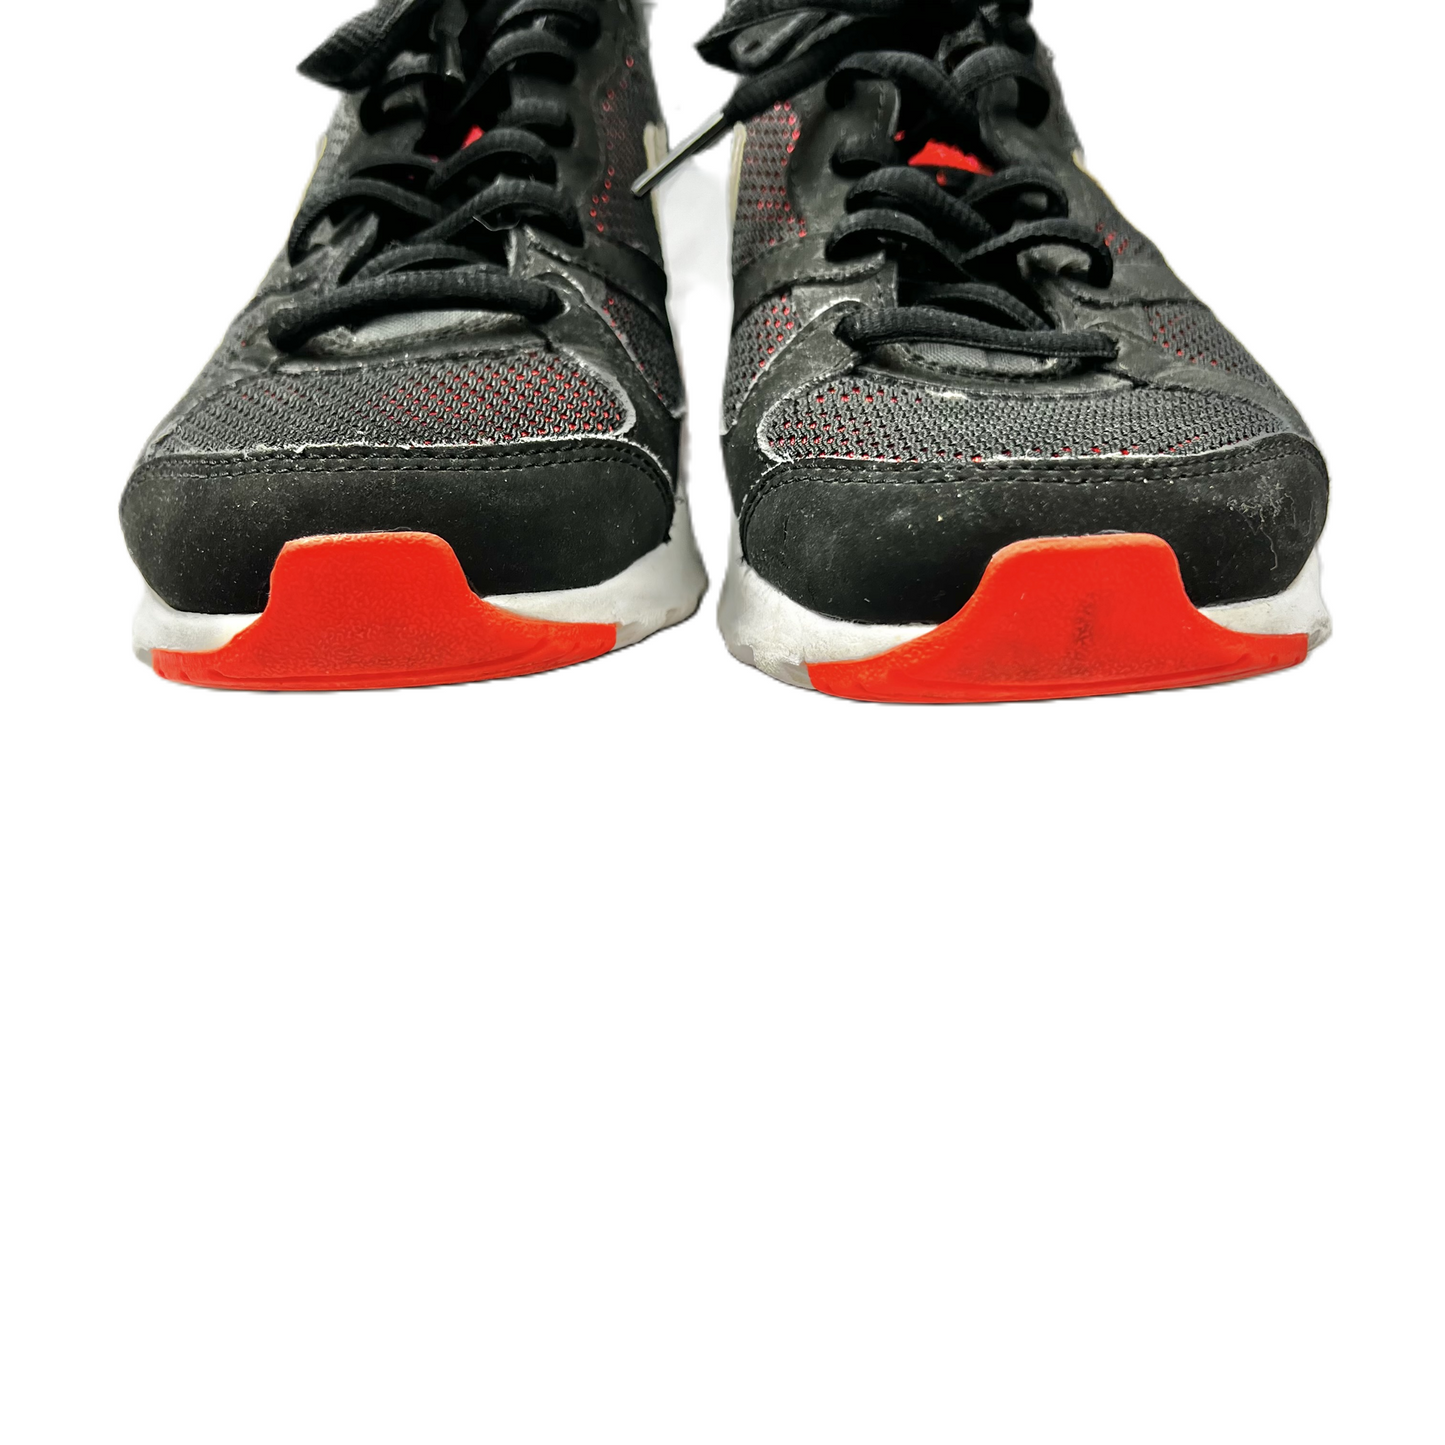 Black & Orange Shoes Athletic By Nike, Size: 6